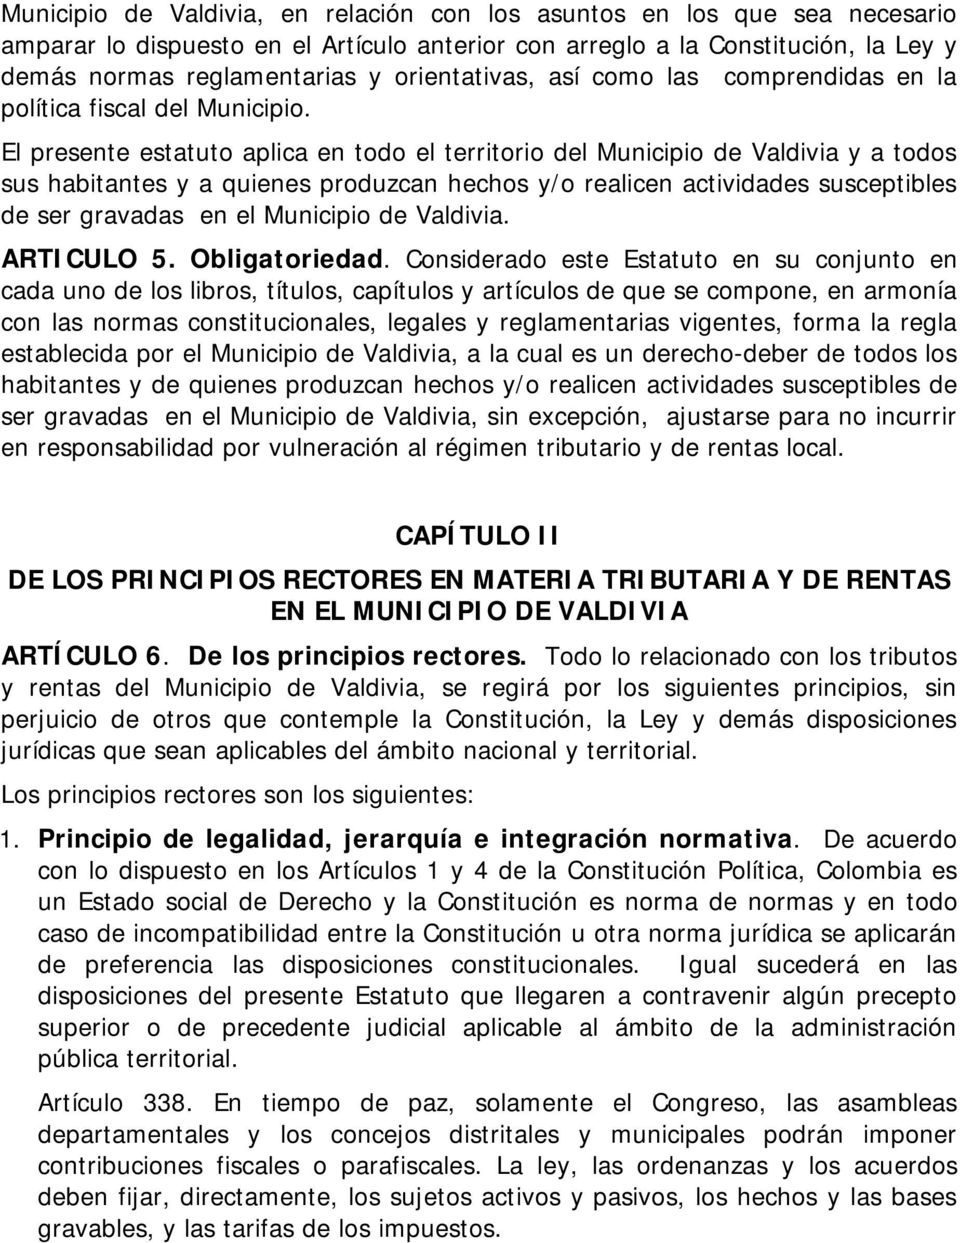 El presente estatuto aplica en todo el territorio del Municipio de Valdivia y a todos sus habitantes y a quienes produzcan hechos y/o realicen actividades susceptibles de ser gravadas en el Municipio